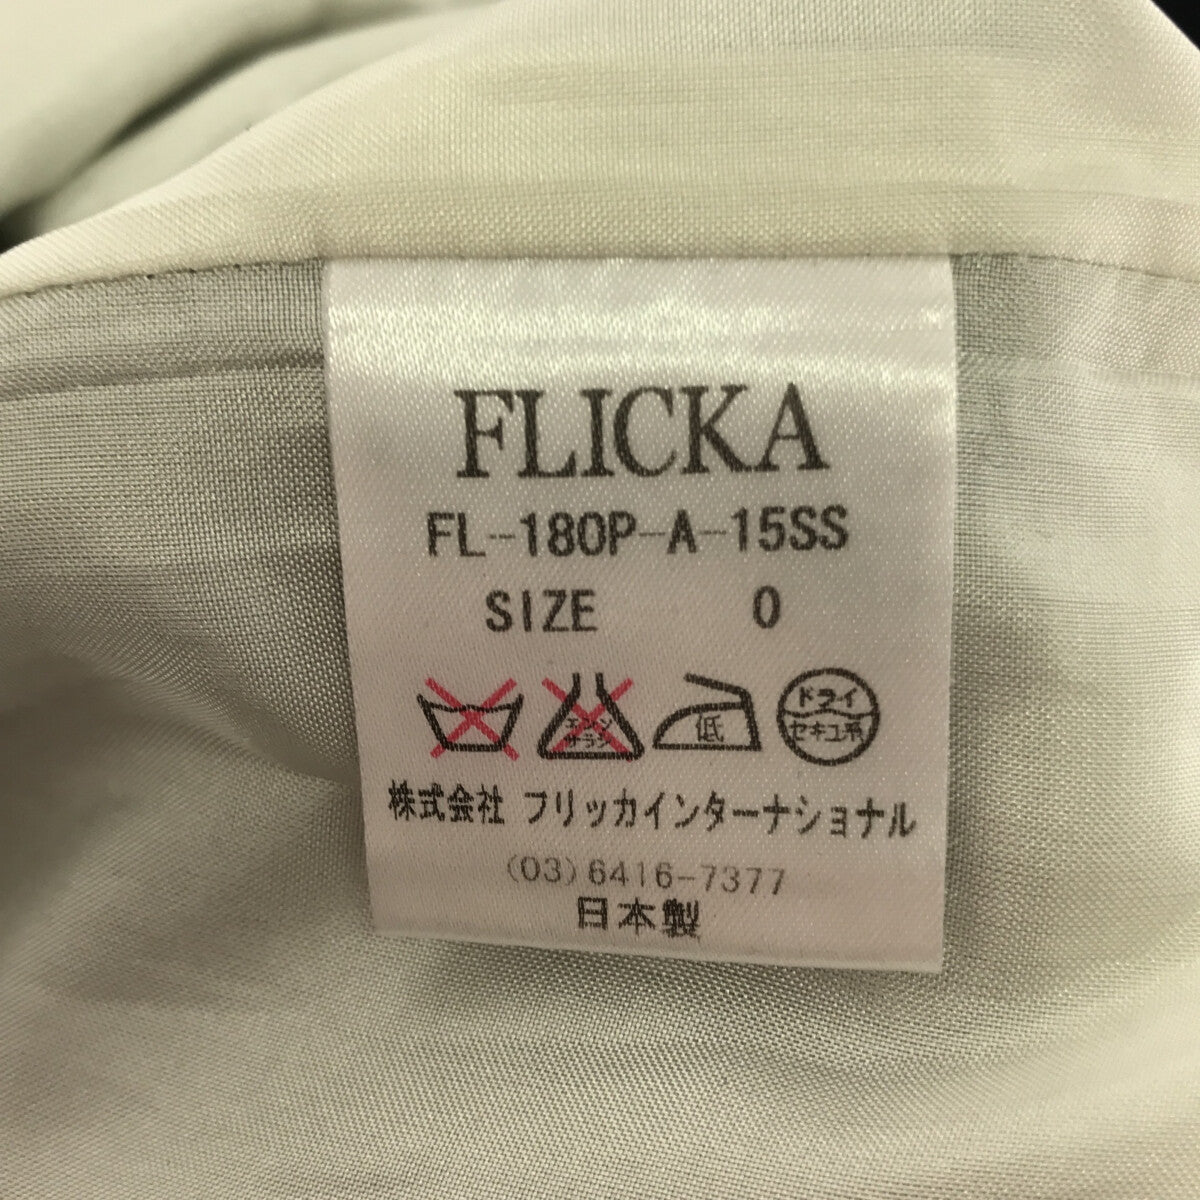 FLICKA / フリッカ | フラワージャガード ノースリーブ ティアード ワンピース | 0 |